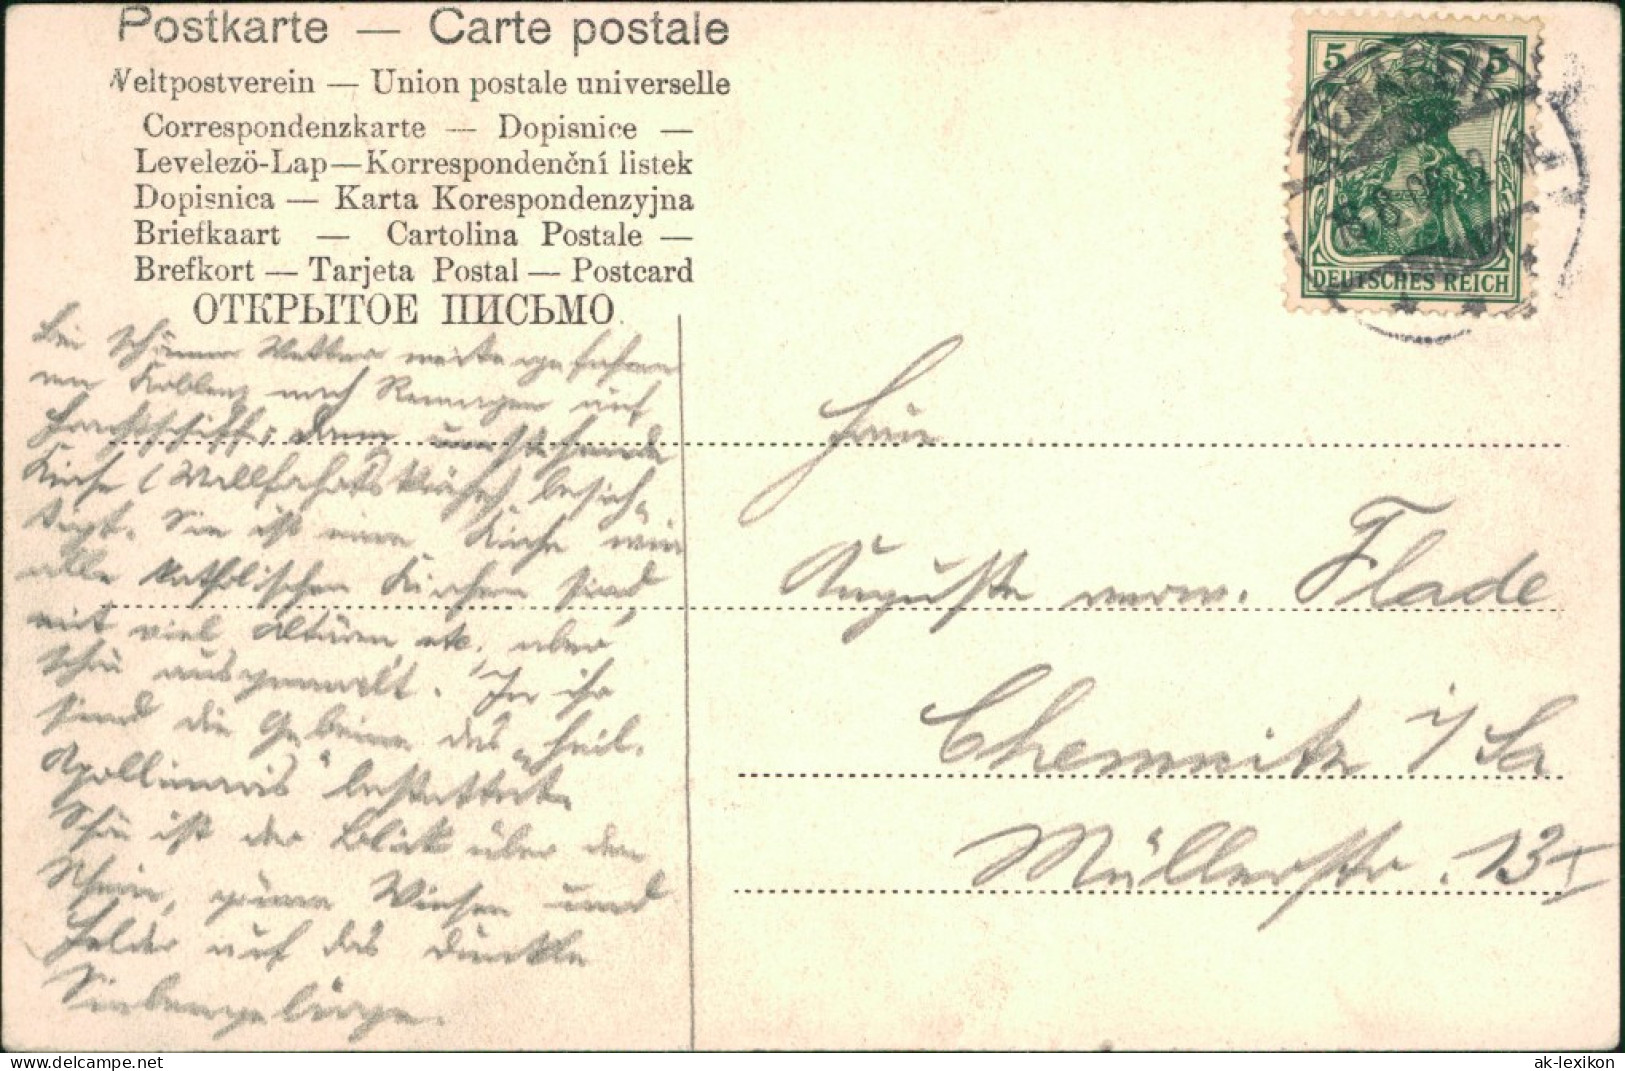 Ansichtskarte Remagen Apollinariskirche 1906 - Remagen